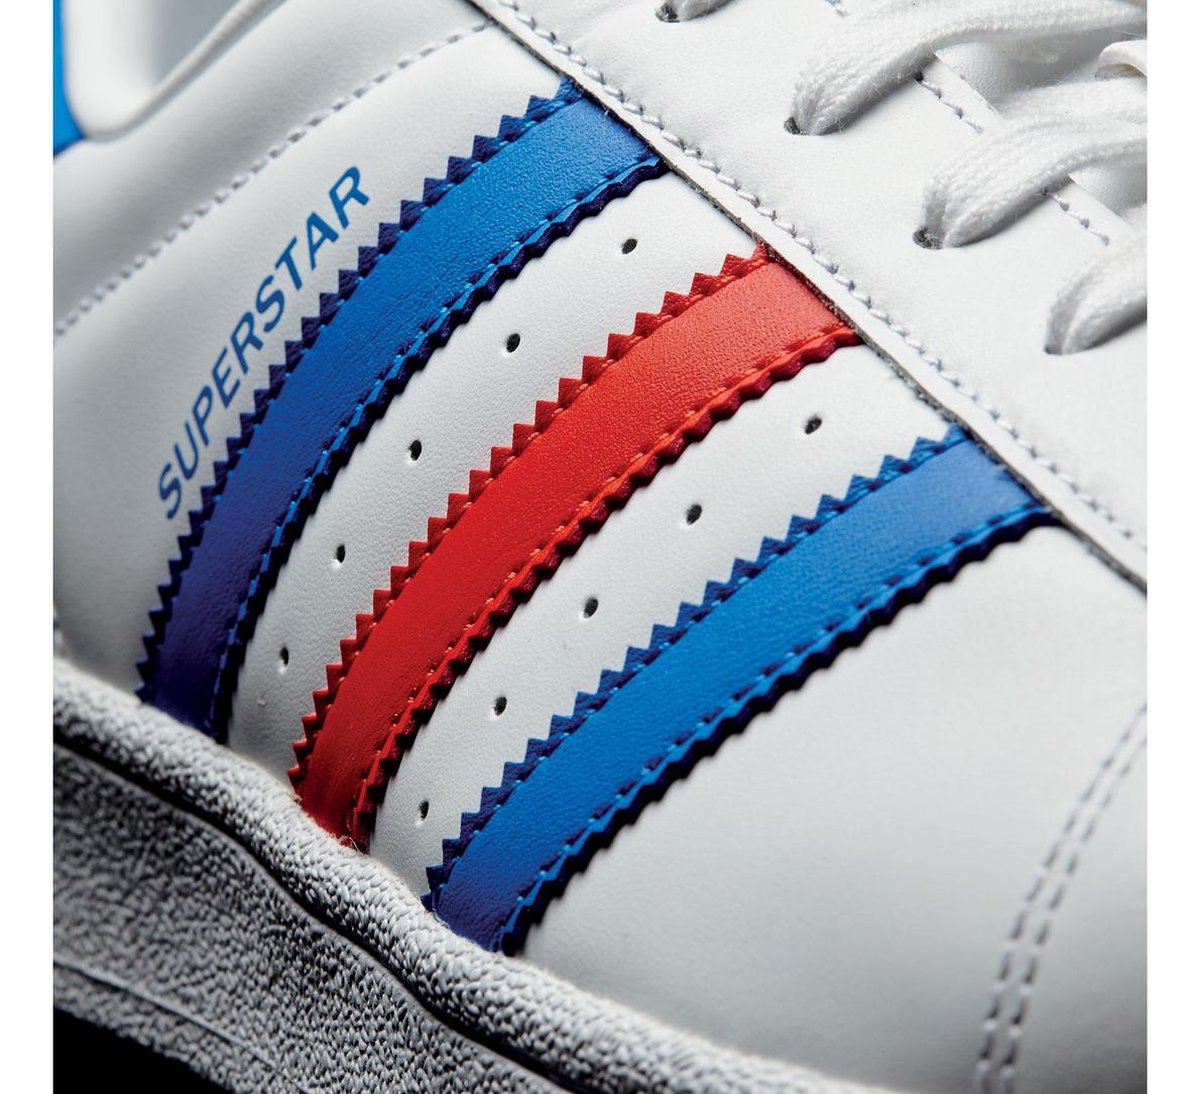 adidas Superstar Sneakers Heren Sneakers - Maat 42 2/3 - Mannen - wit/blauw/ rood | bol.com